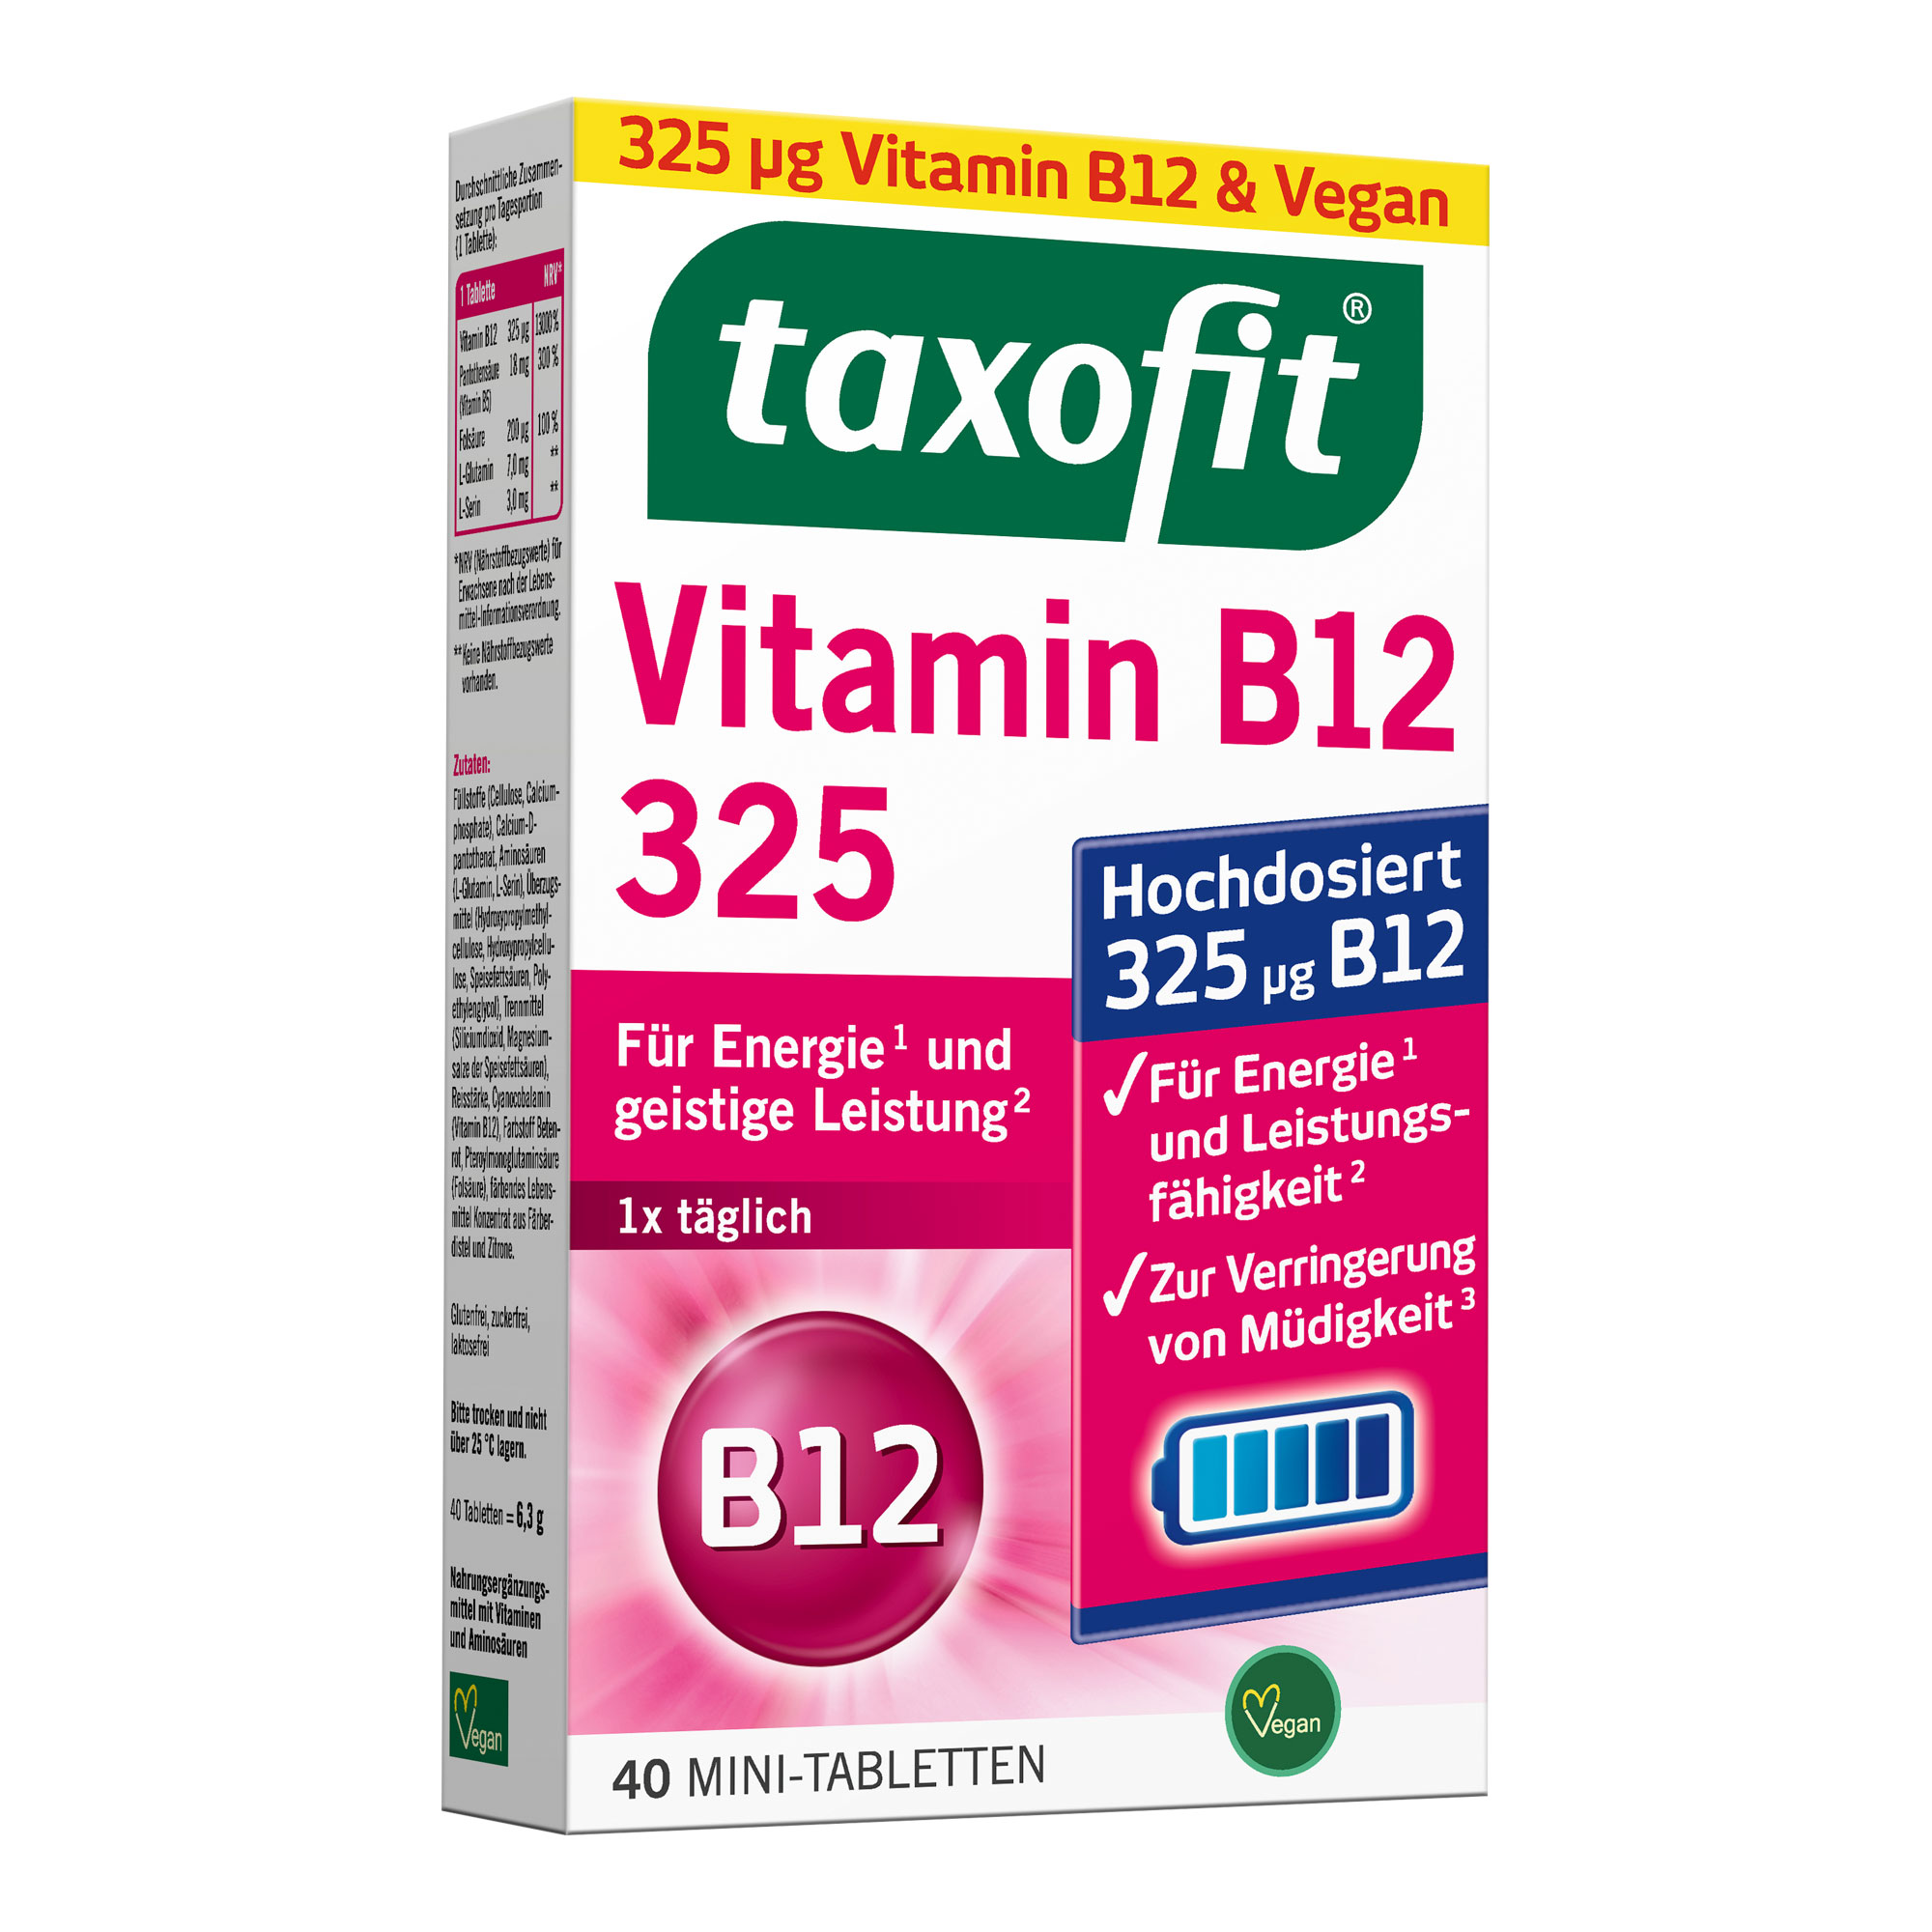 Nahrungsergänzungsmittel mit hochdosiertem Vitamin B12, Vitamin B5, Folsäure und Aminsäuren.